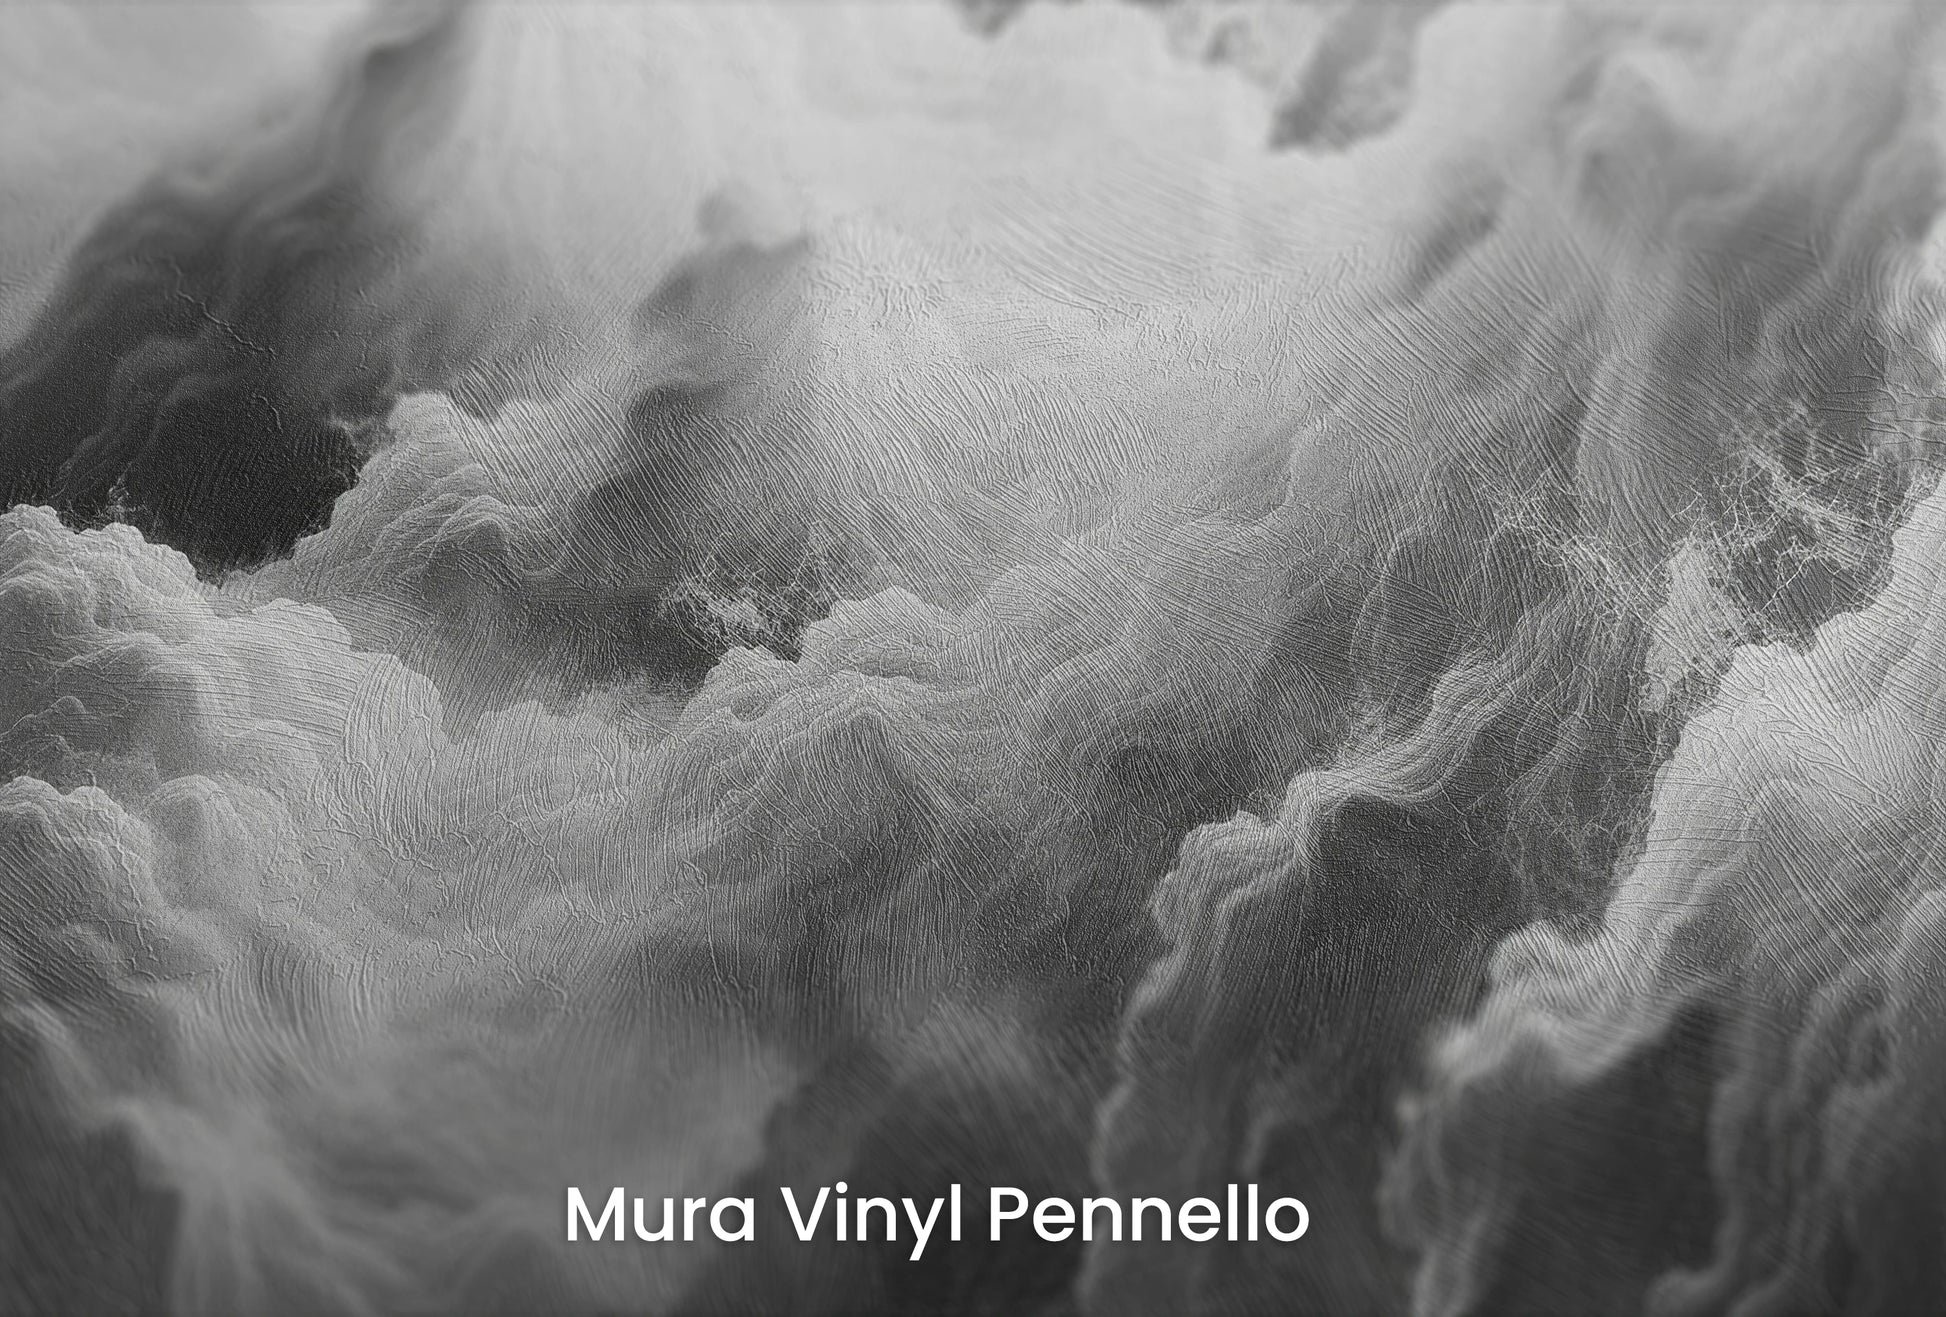 Zbliżenie na artystyczną fototapetę o nazwie Ethereal Stratus na podłożu Mura Vinyl Pennello - faktura pociągnięć pędzla malarskiego.